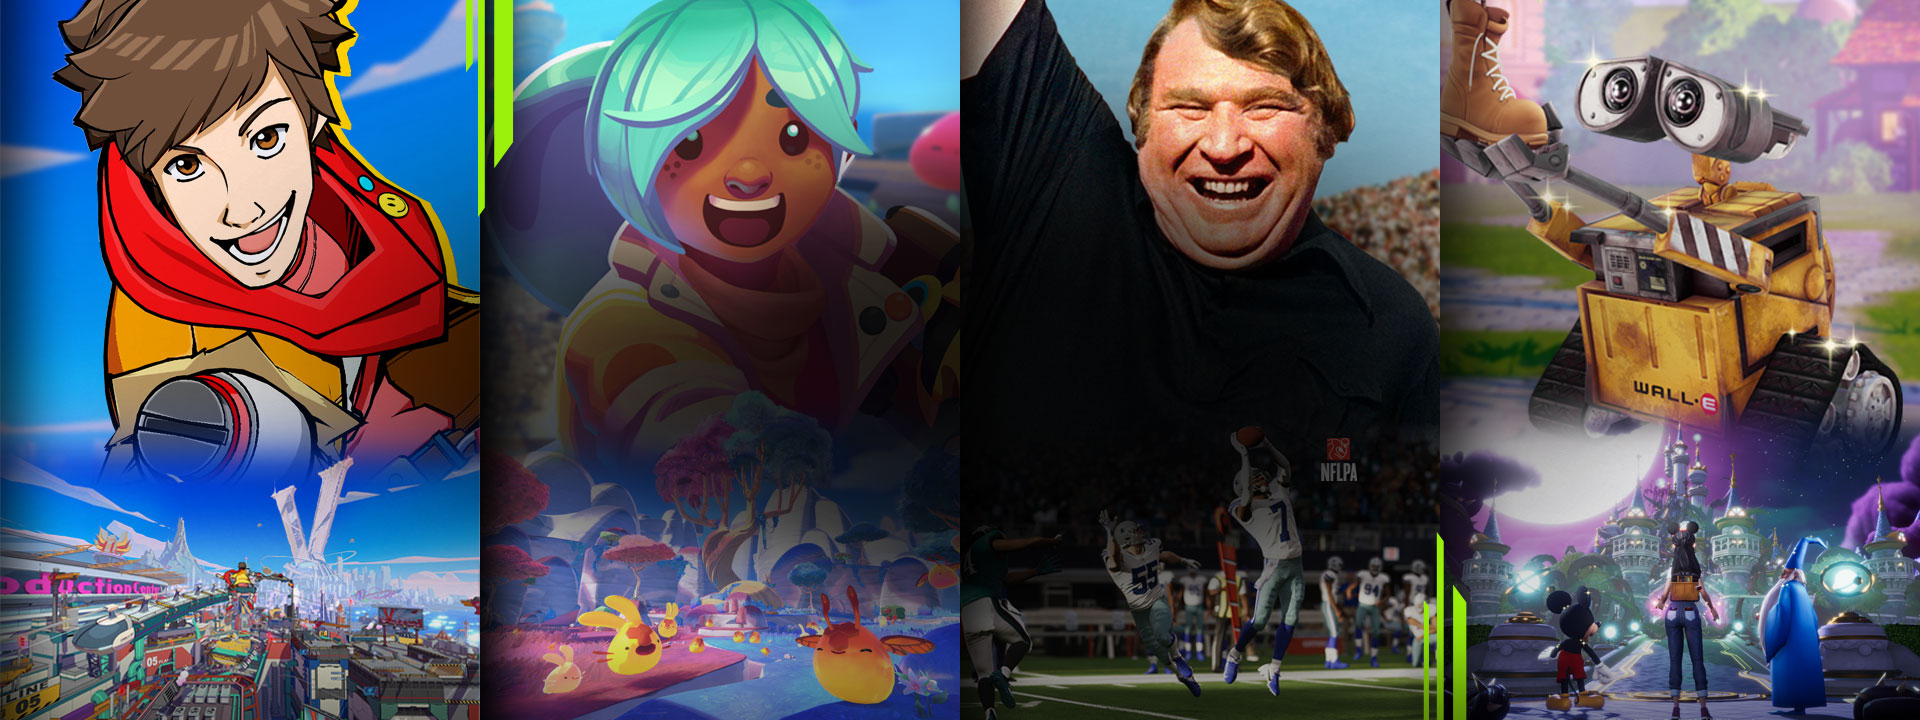 مجموعة مختارة من الألعاب المتوفرة مع تمريرة لعبة Xbox بما في ذلك Hi-Fi Rush و Slime Rancher 2 و Madden NFL 23 و Disney Dreamlight Valley